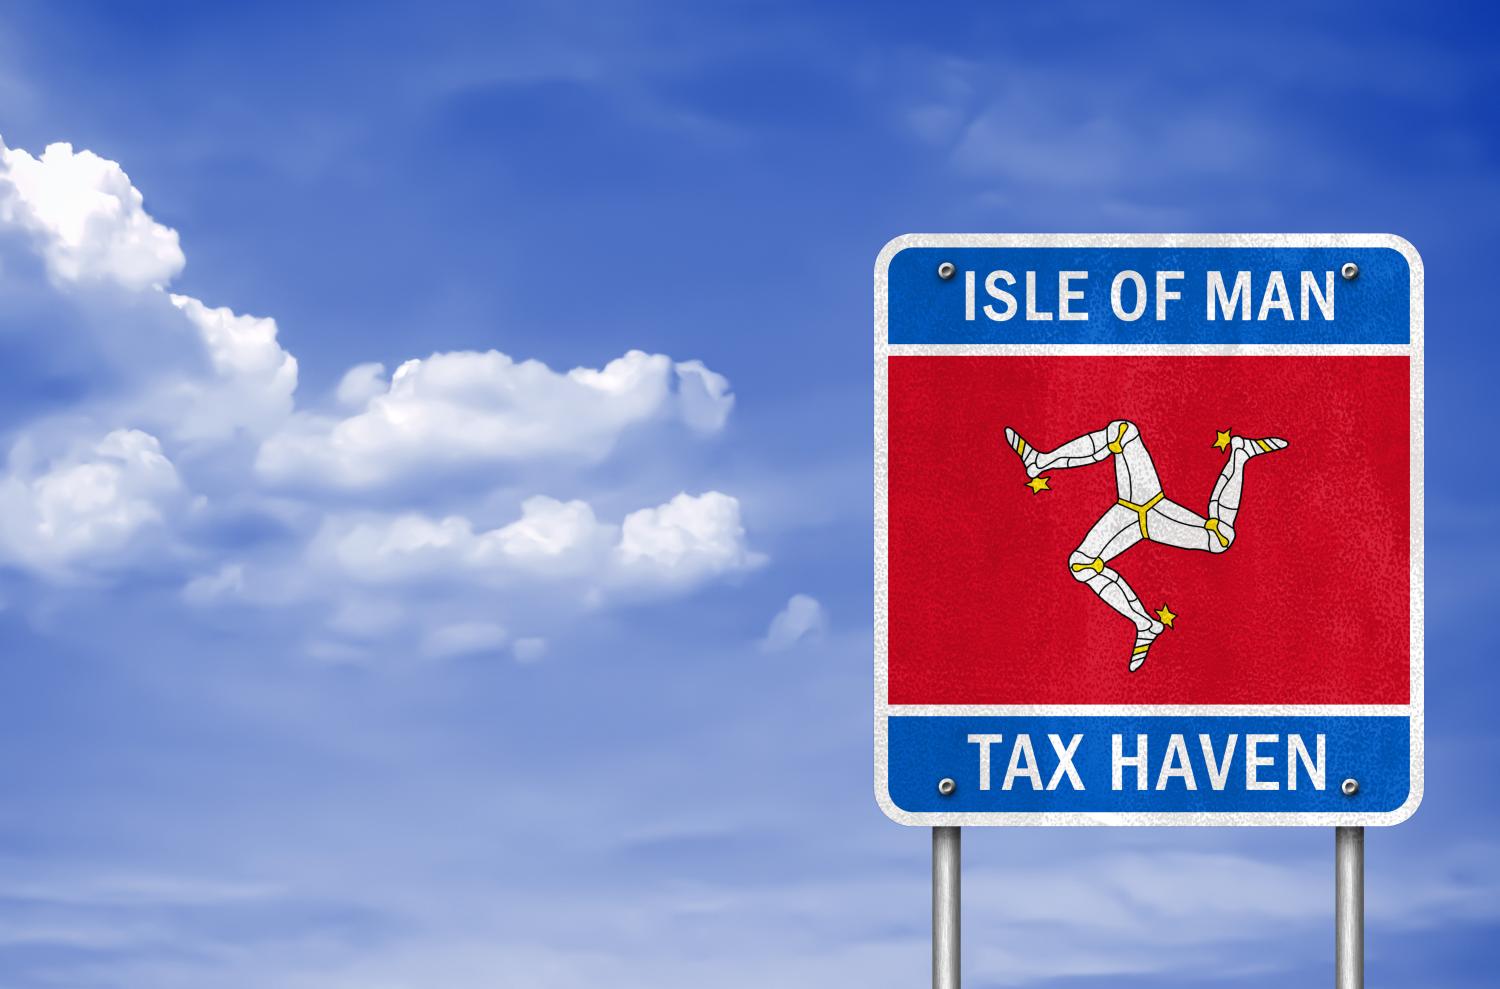 Isle of Man, "tax haven"